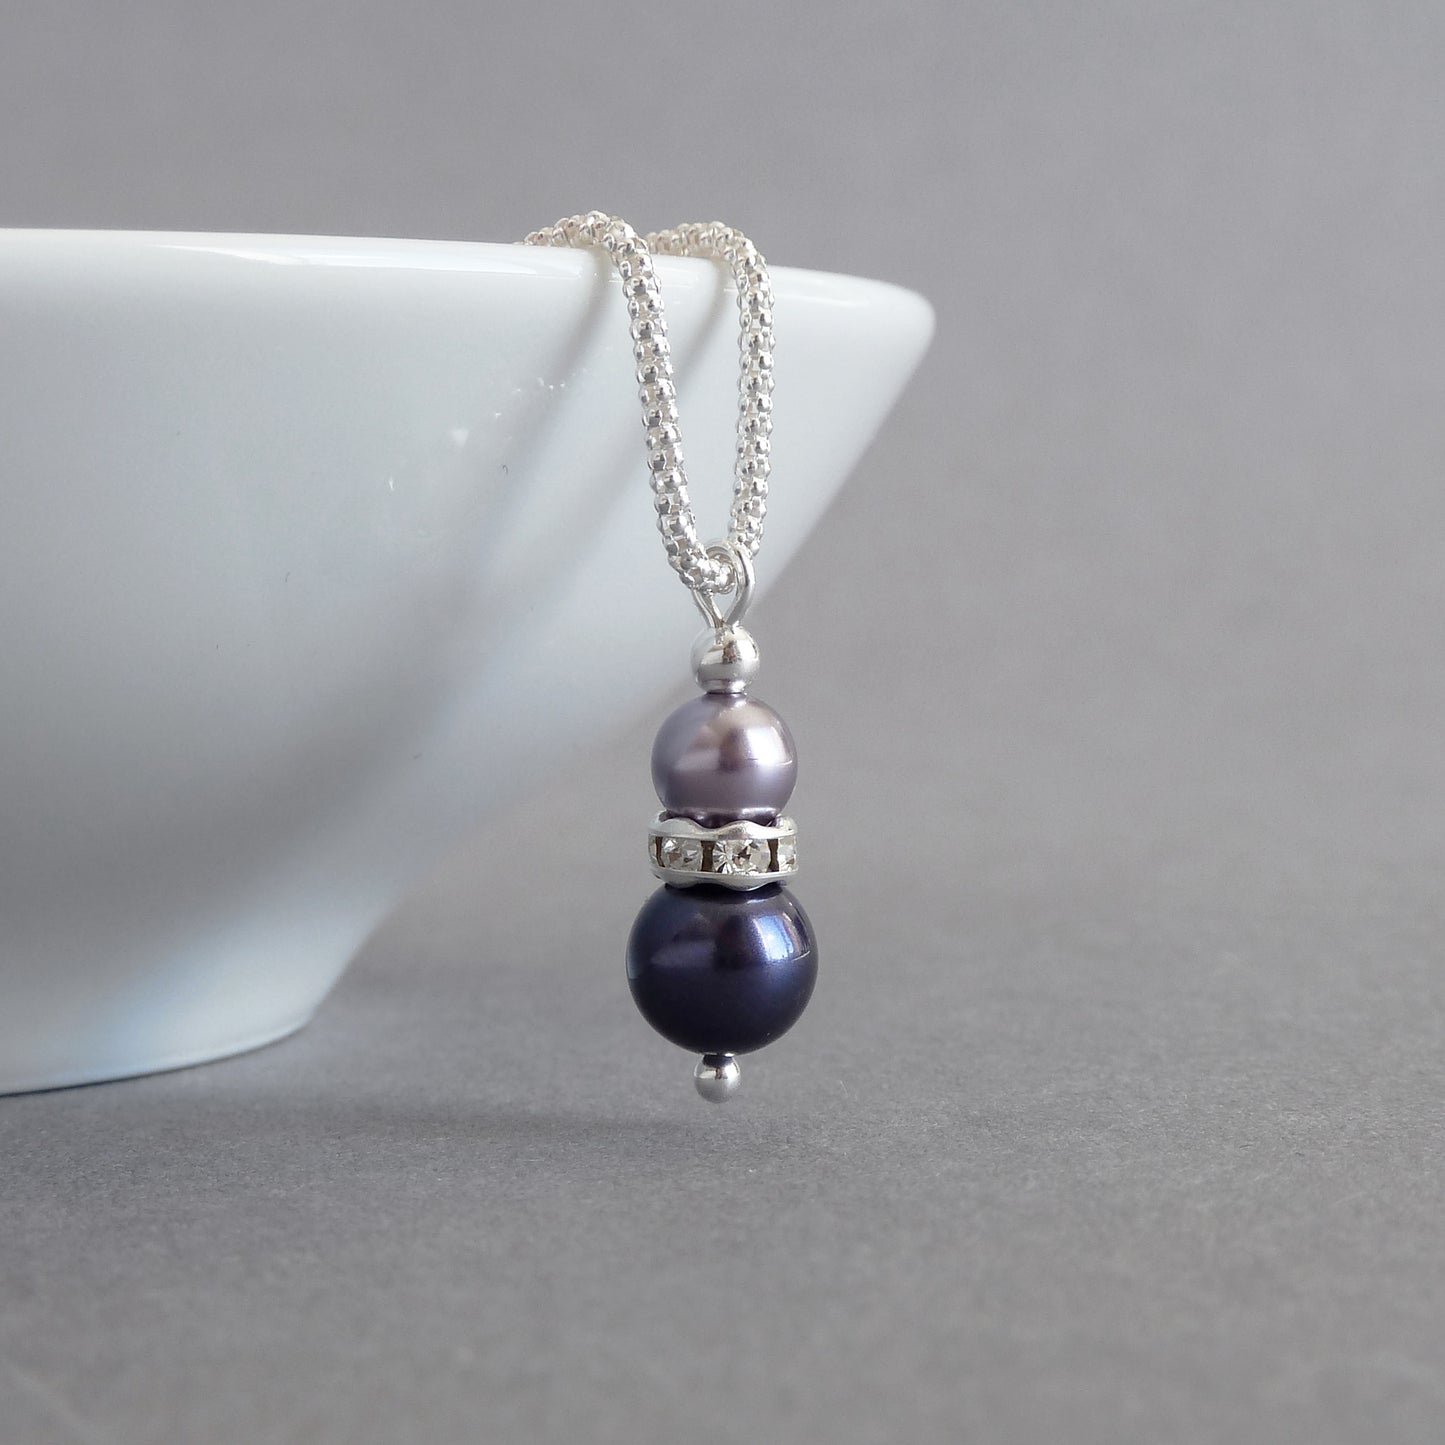 Dusty purple drop necklace